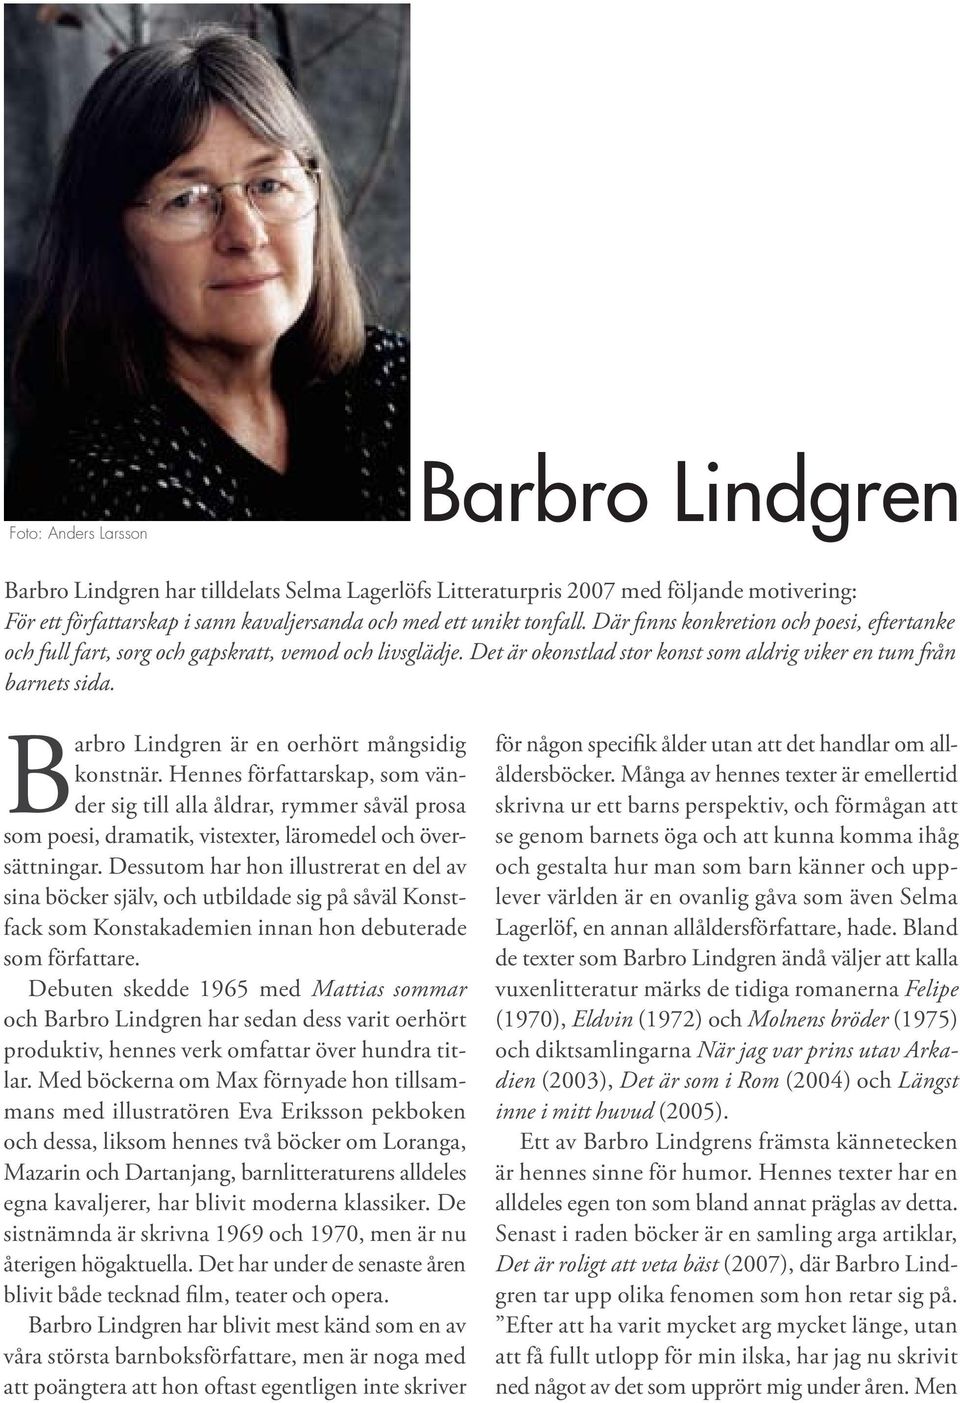 Barbro Lindgren är en oerhört mångsidig konstnär. Hennes författarskap, som vänder sig till alla åldrar, rymmer såväl prosa som poesi, dramatik, vistexter, läromedel och översättningar.